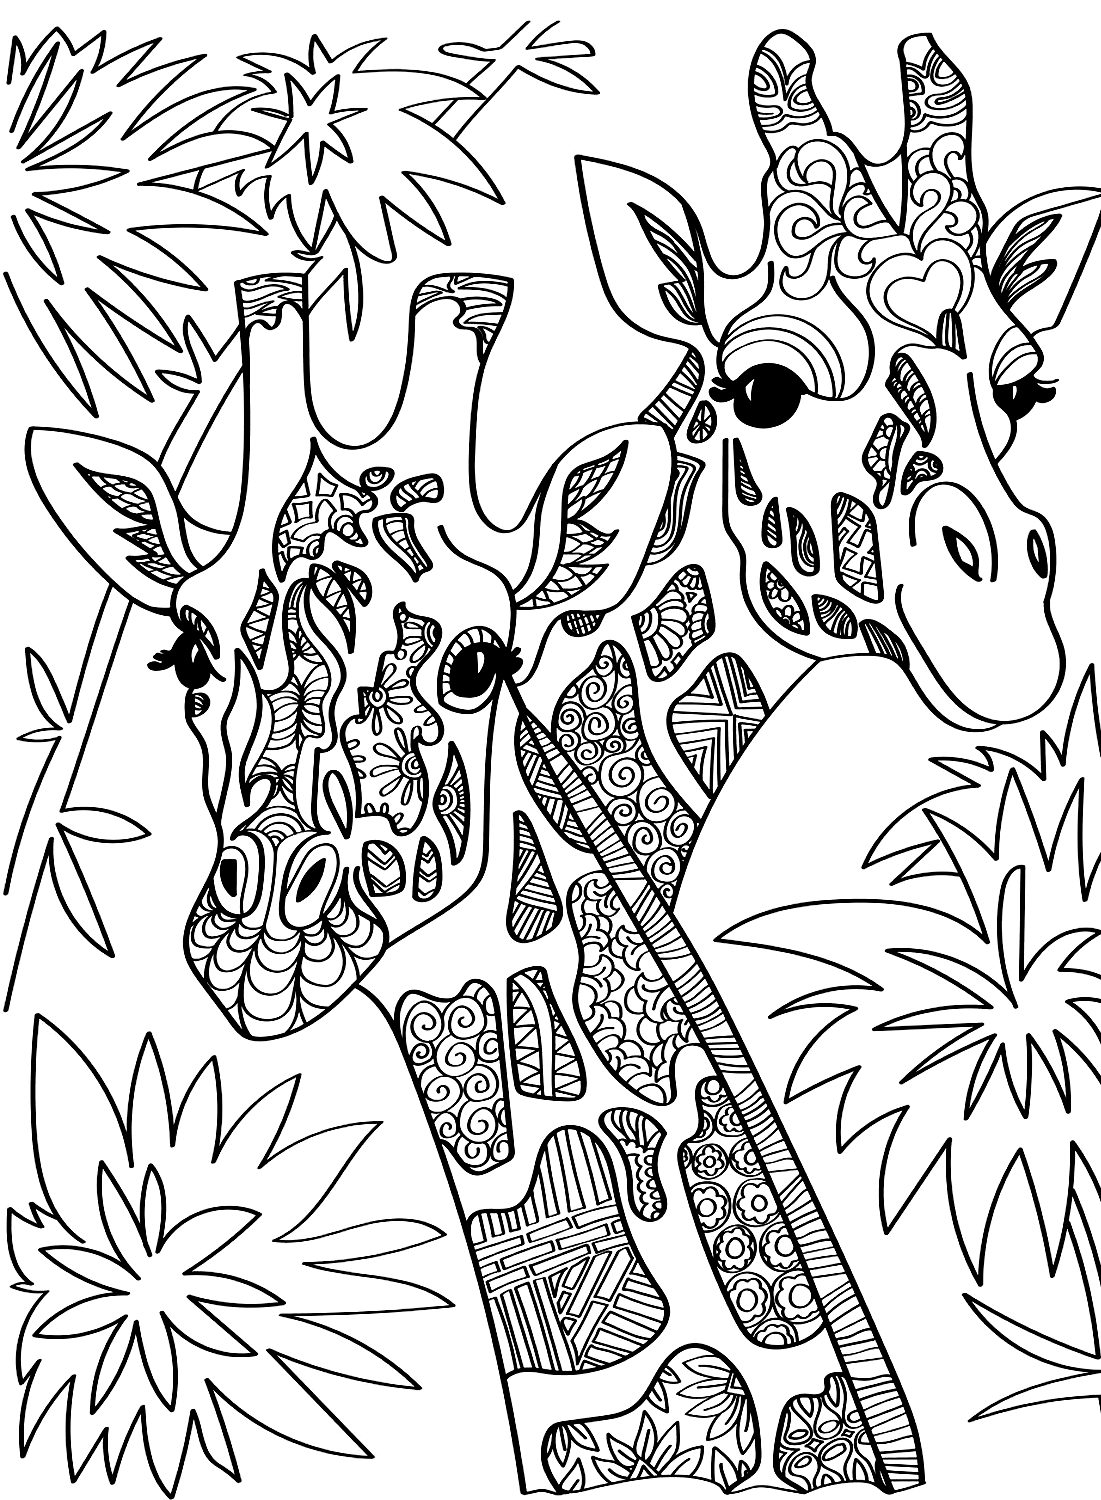 Pagina a colori sulle giraffe per adulti da Giraffe